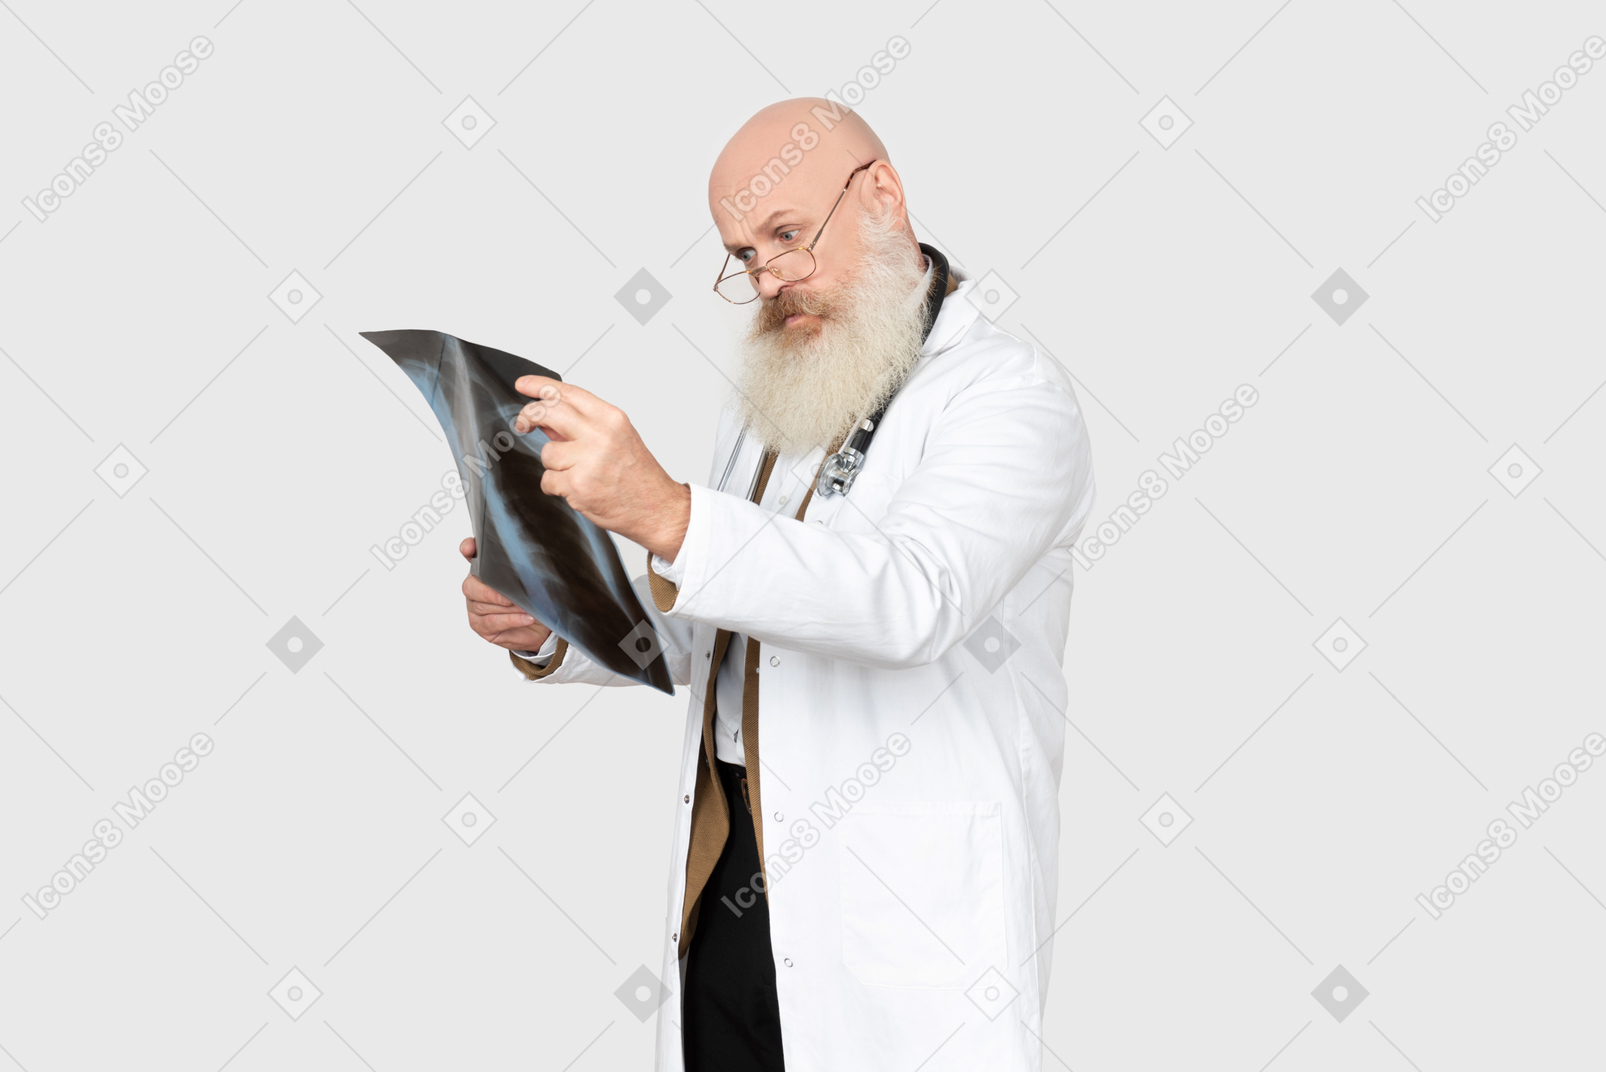 Reifer doktor, der einen röntgenstrahl hält